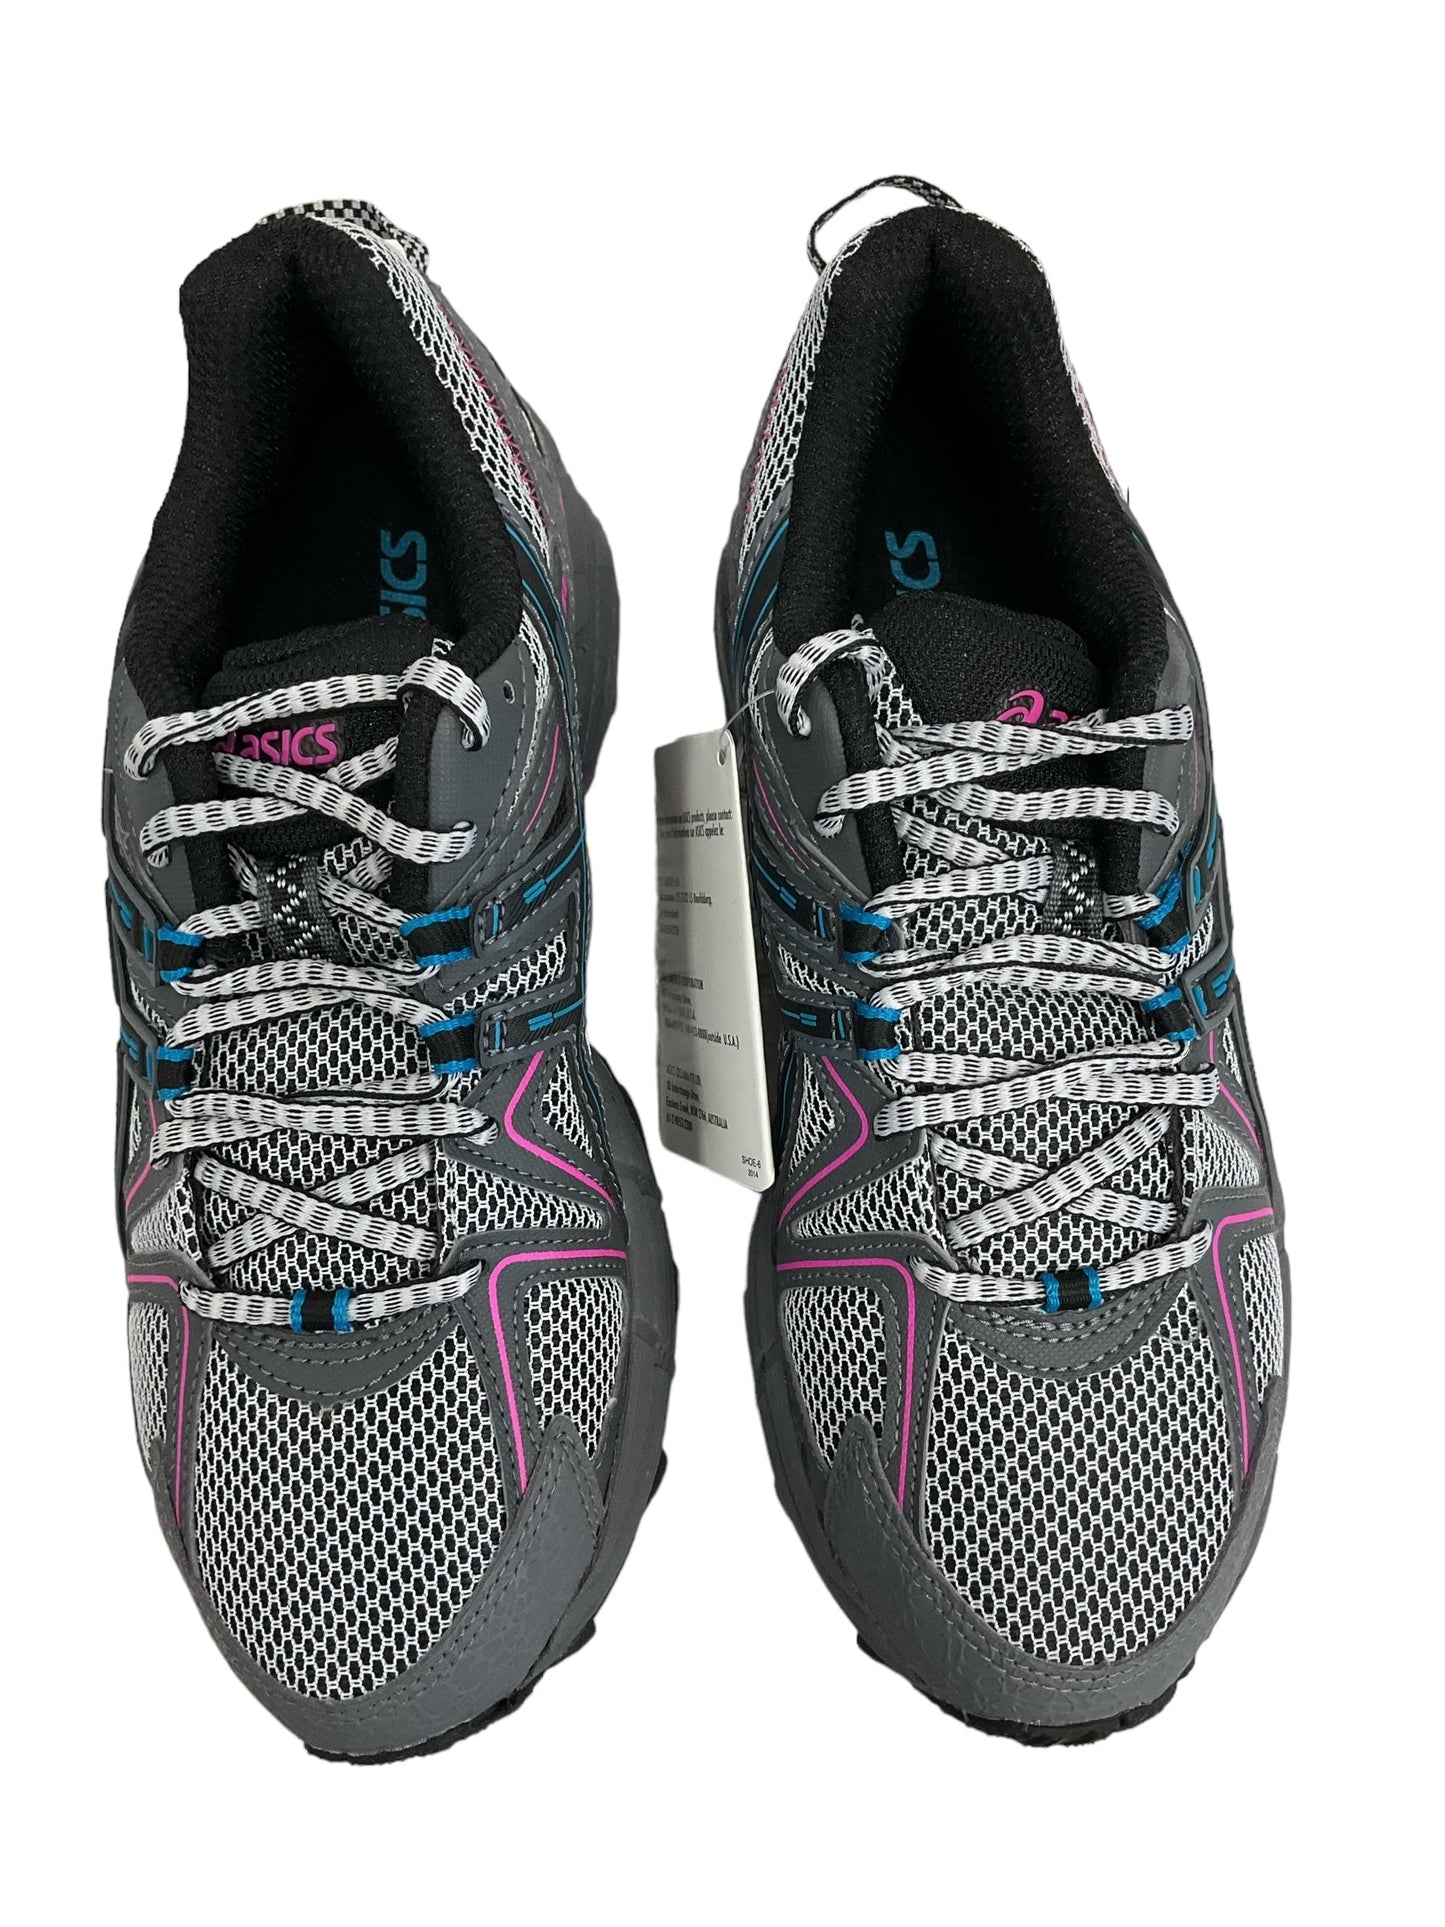 Blue & Grey Shoes Athletic Asics, Size 6.5